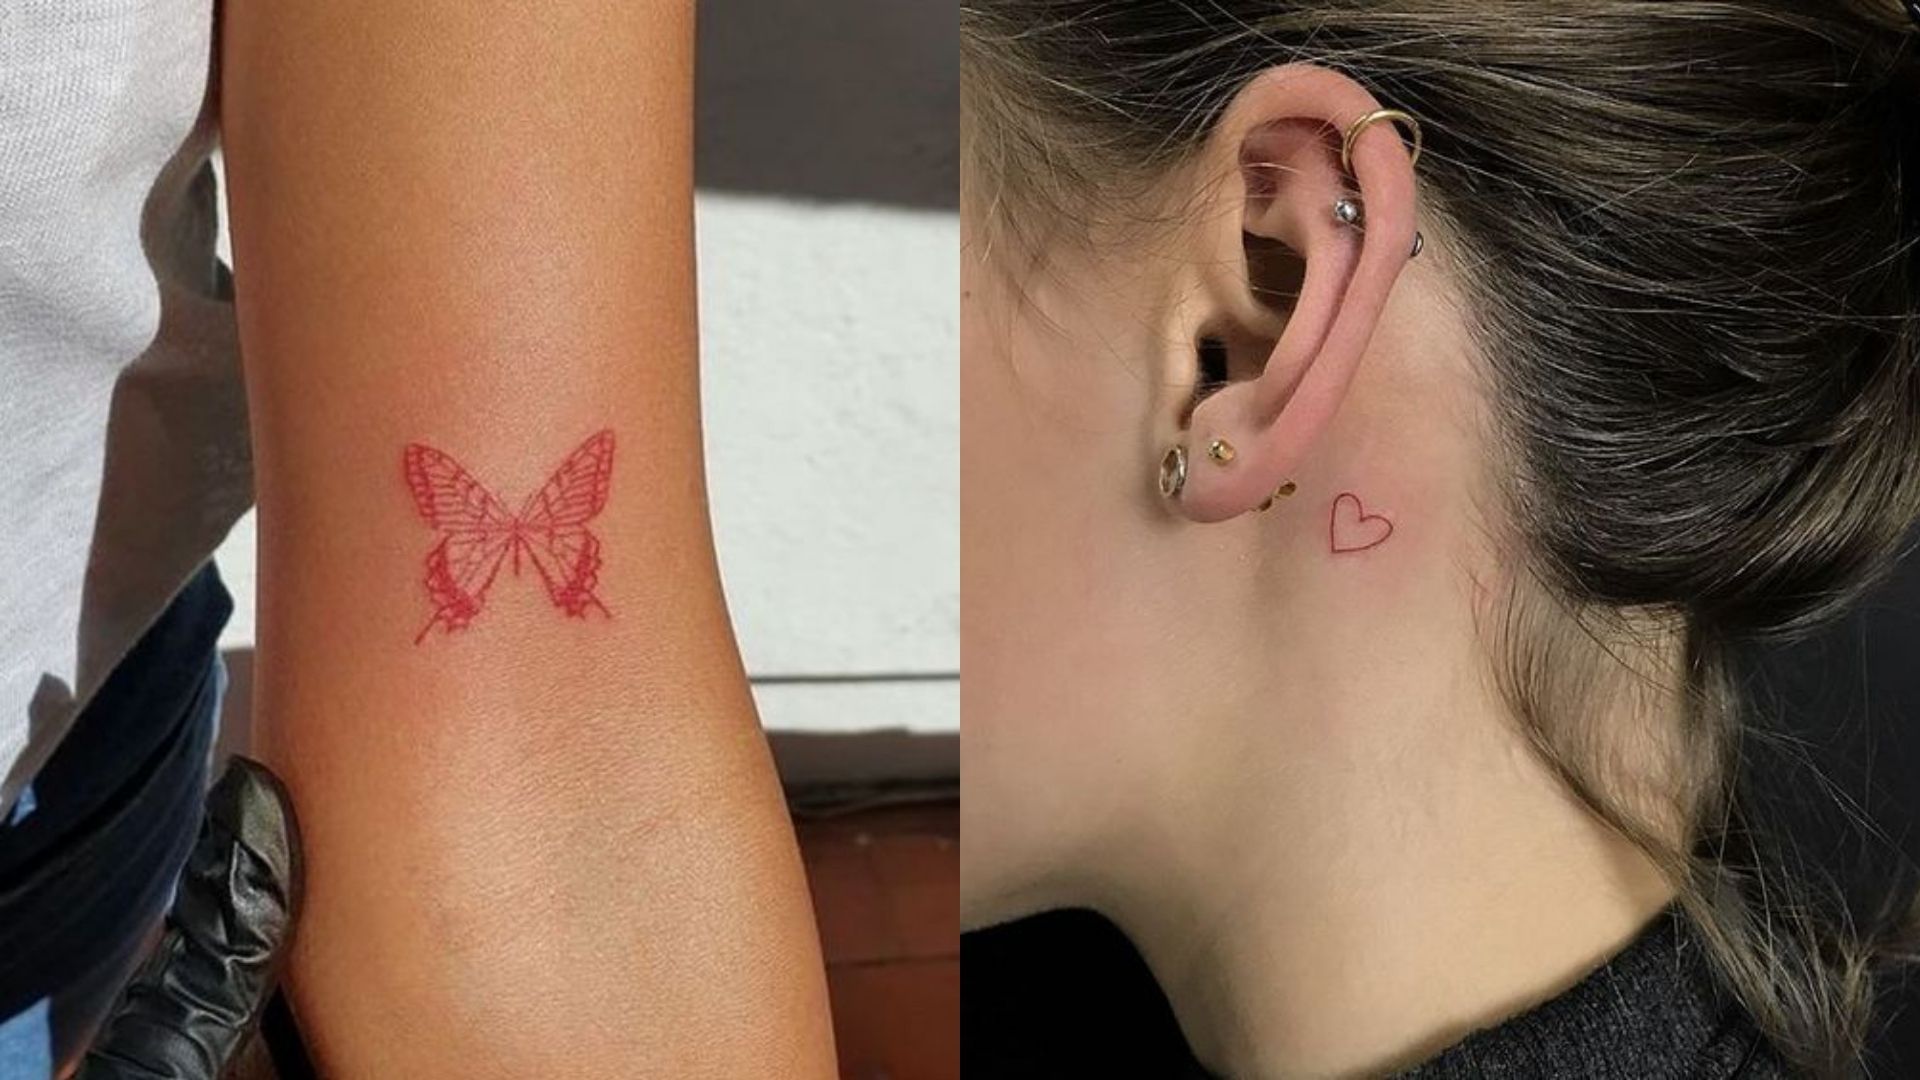 43 Funny Tattoo Ideas - tattooglee | Funny tattoos, Clever tattoos, Funny small  tattoos